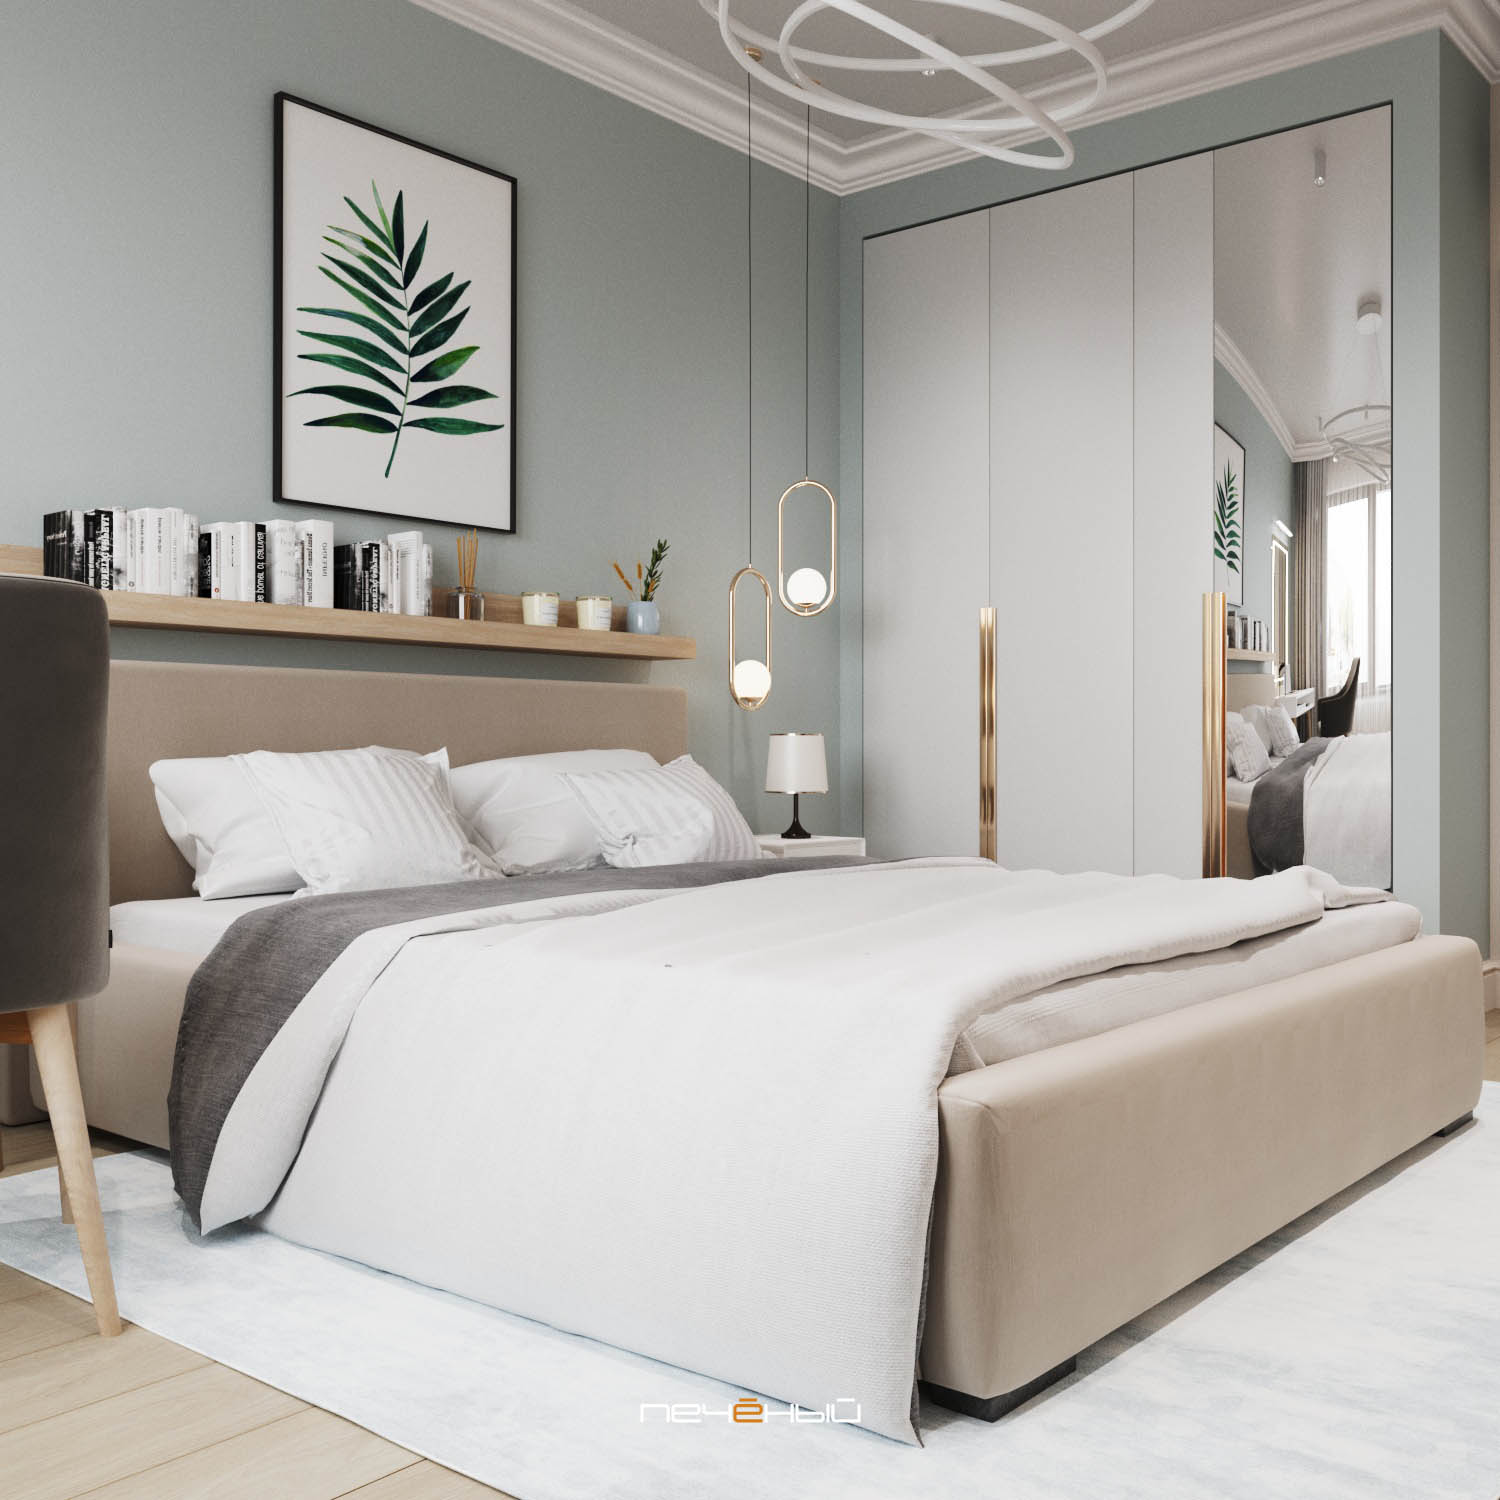 [Download 20+] 24+ Дизайн Спальни 2020 С Гардеробной Images GIF Дизайн Спальни С Угловой Гардеробной